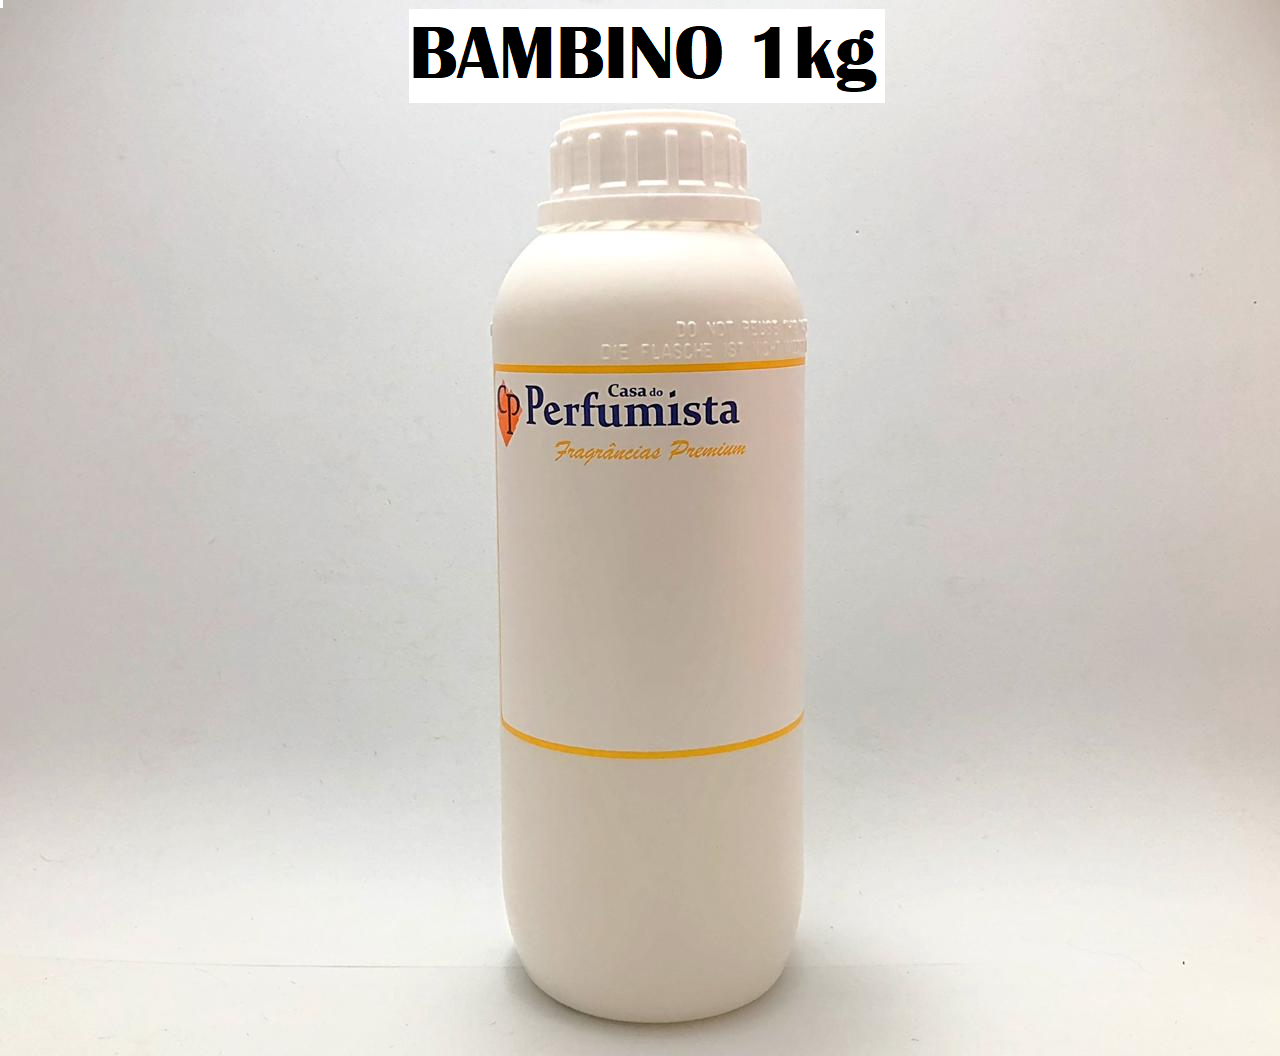 BAMBINO - 1kg